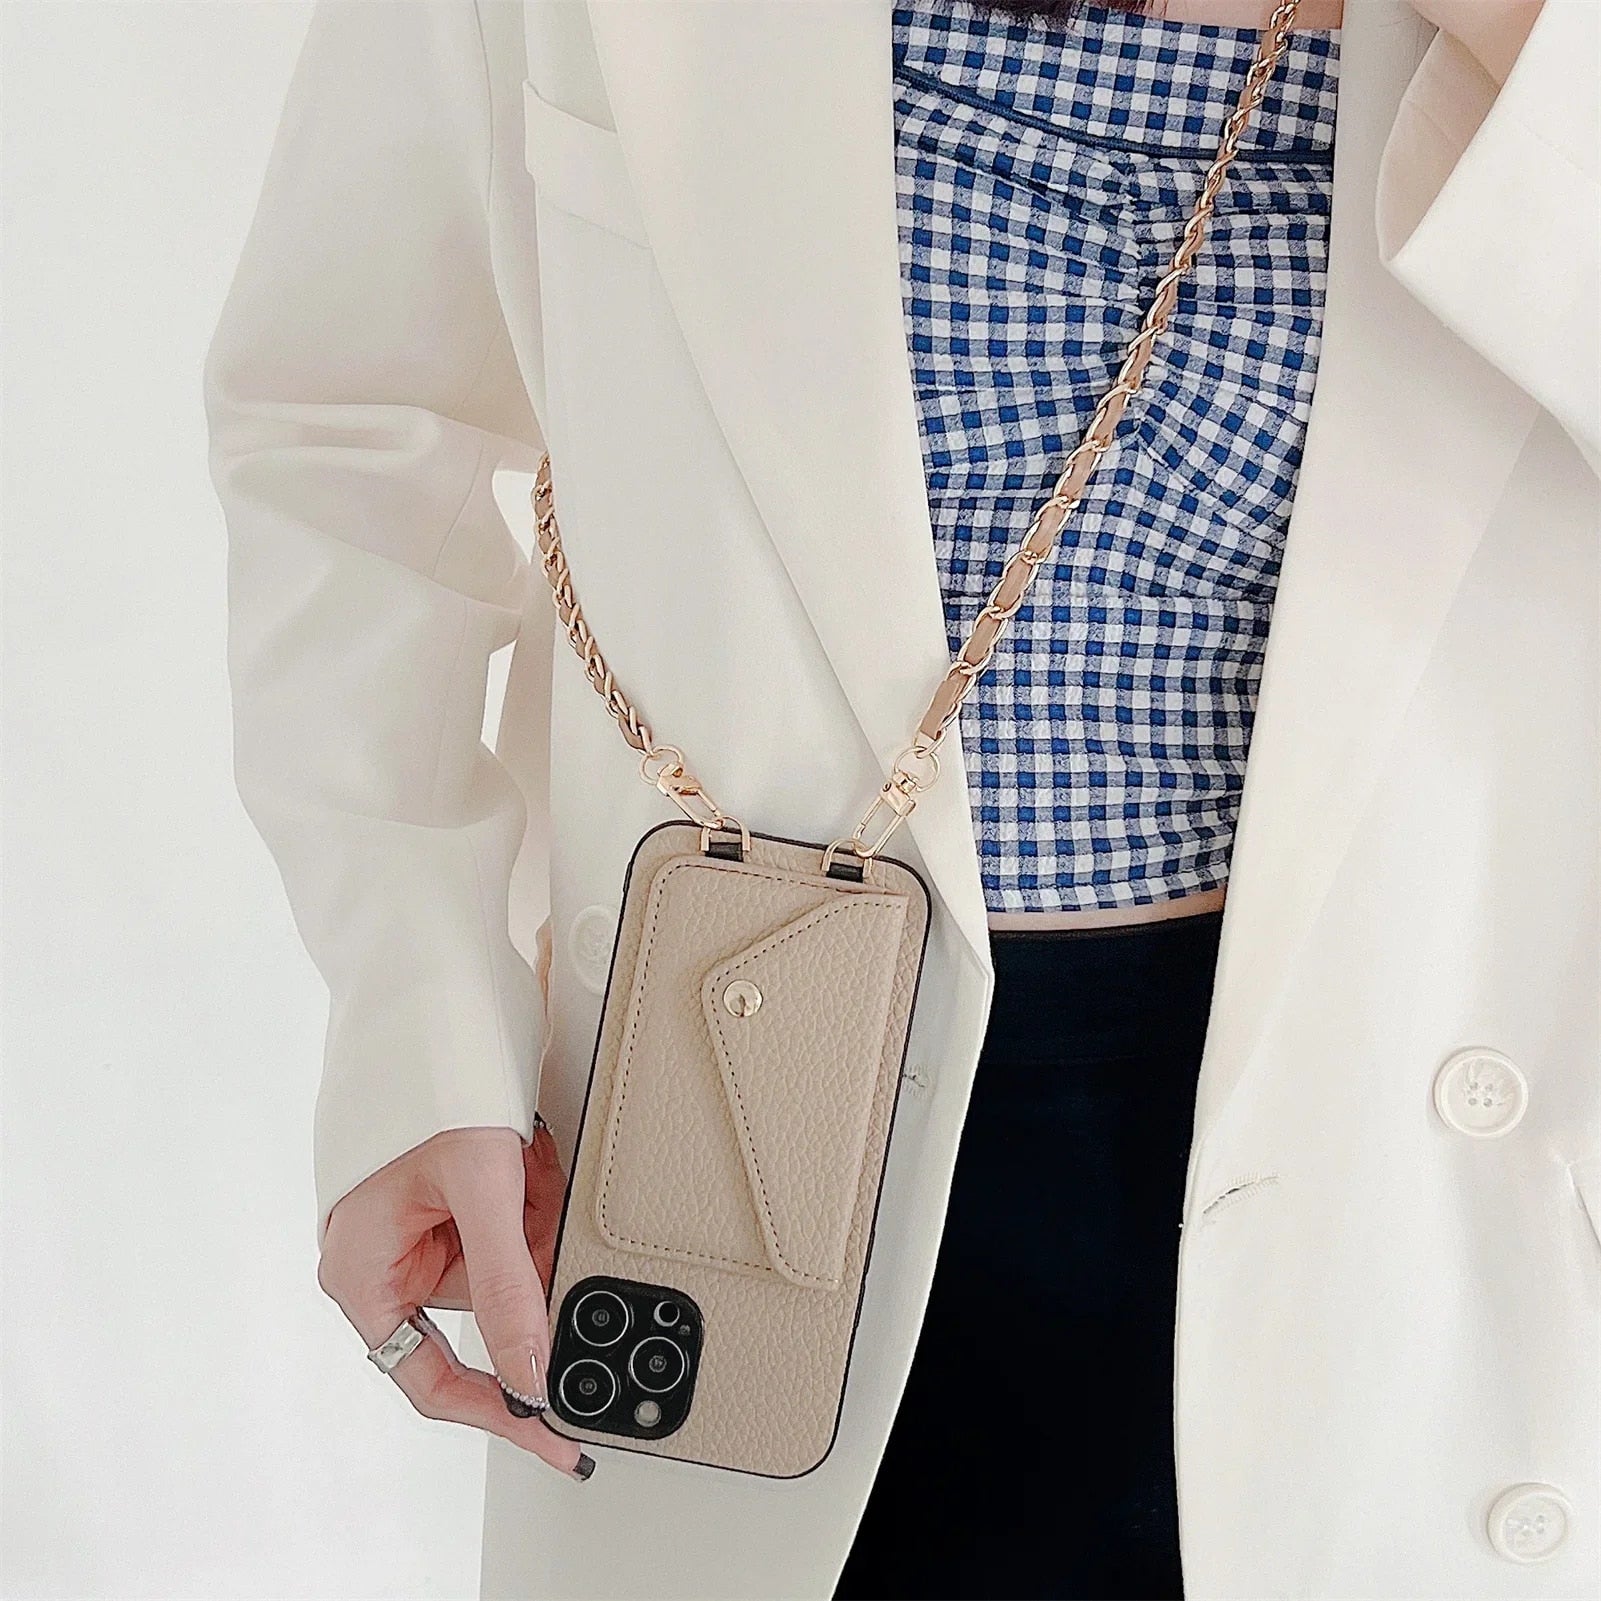 Hochwertige Crossbody-Brieftaschen-Ledertasche mit Kartenhalter und Portemonnaie-Funktion | Apple iPhone-Hülle mit Umhängeband und Geldbörsenfunktion - Phone Heaven Zone